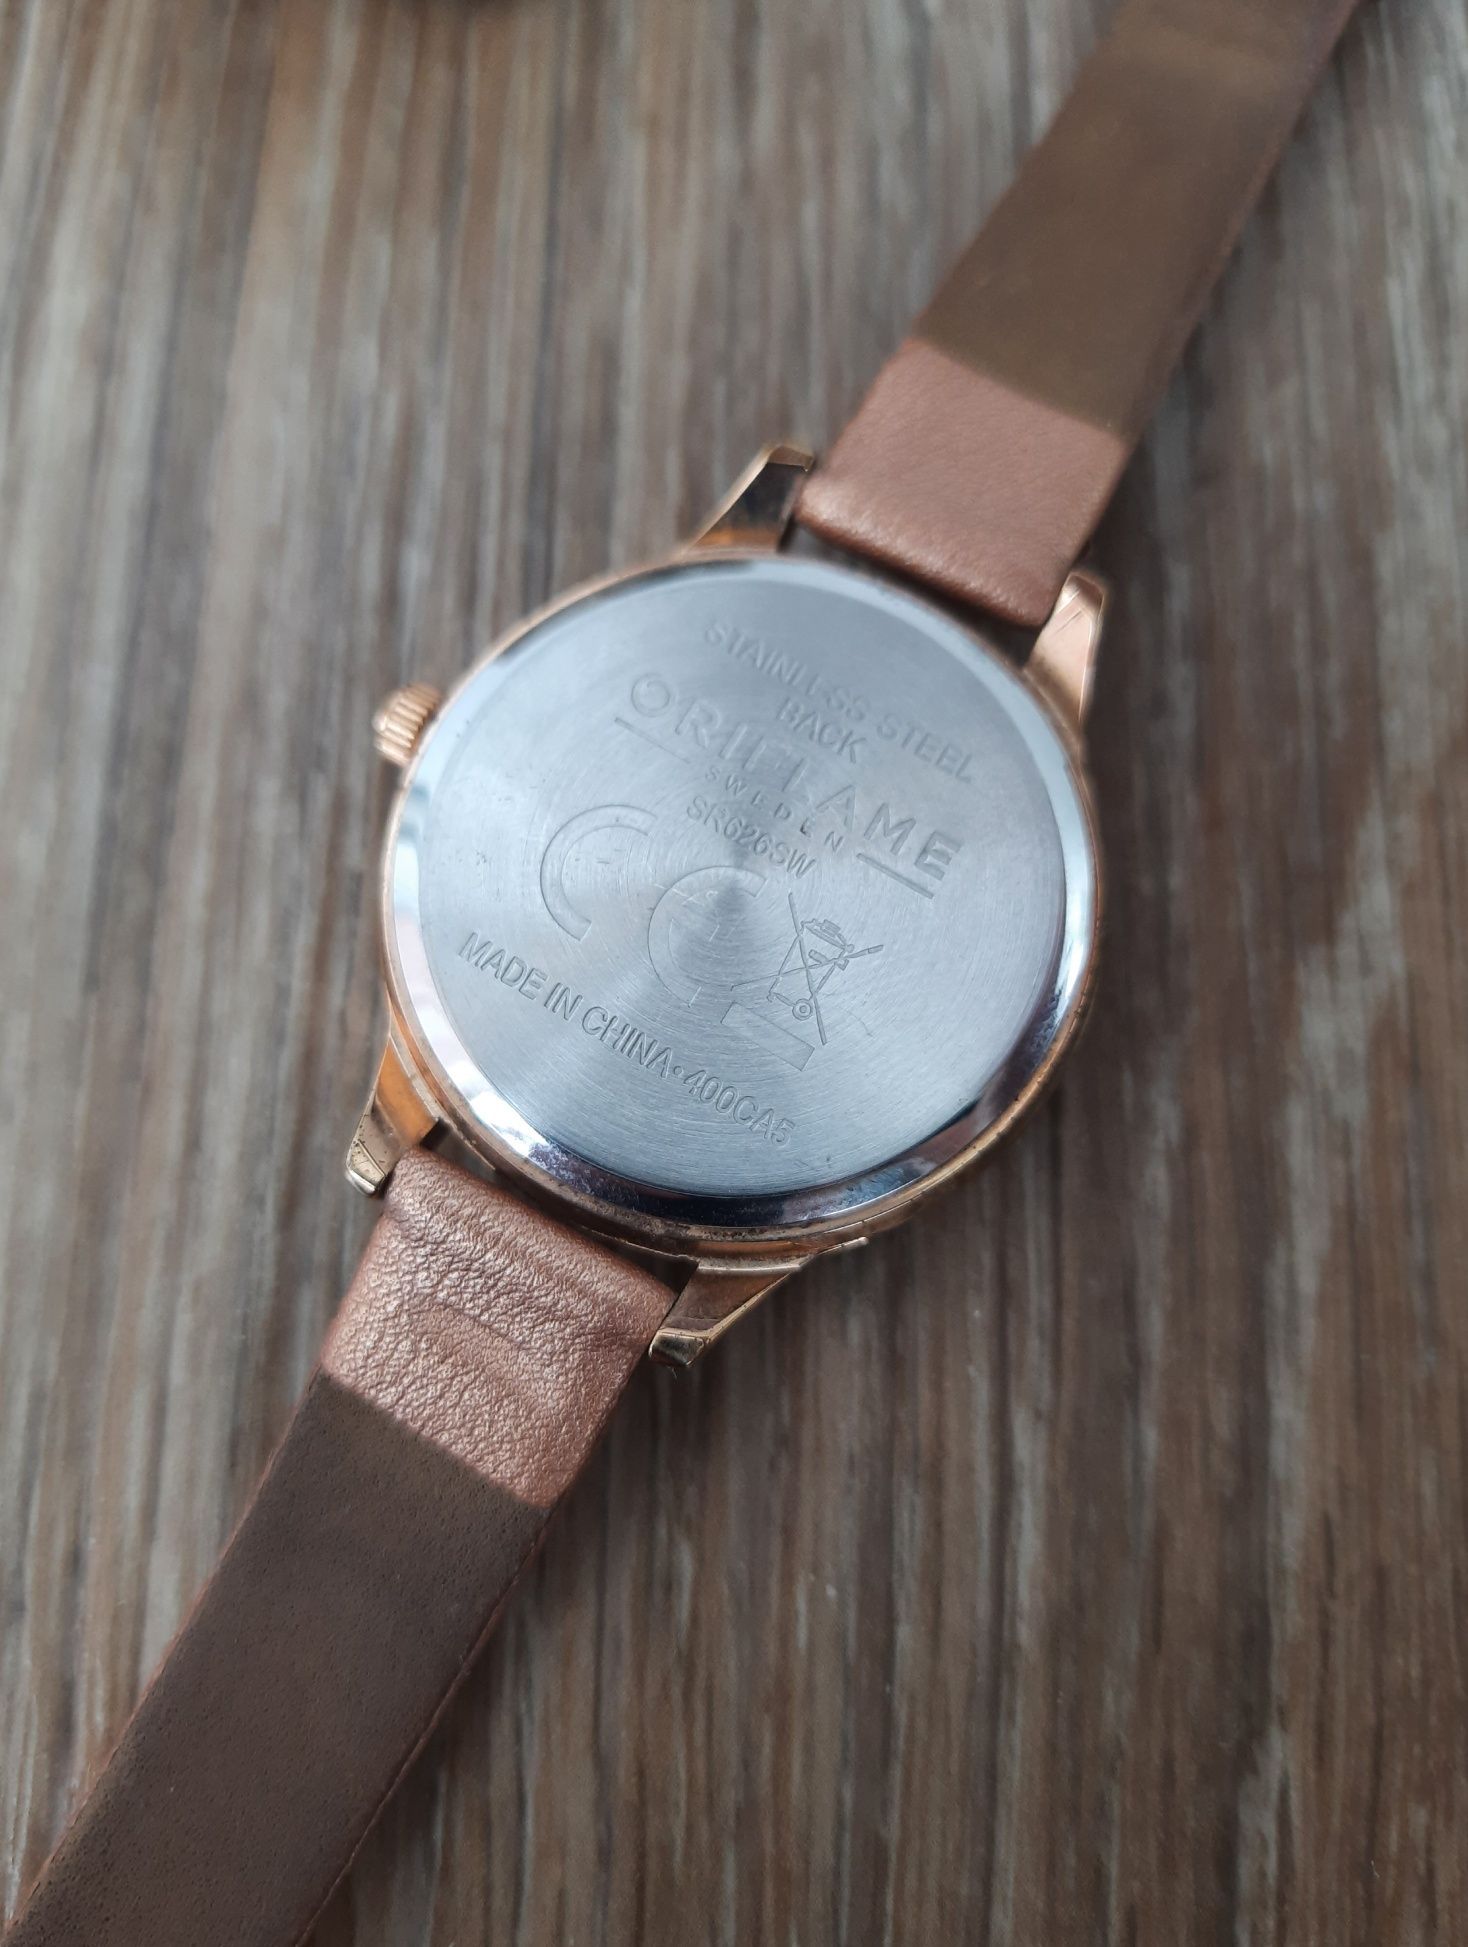 Знижка ‼️ Наручний годинник Oriflame Reloj Giordani Gold як подарок